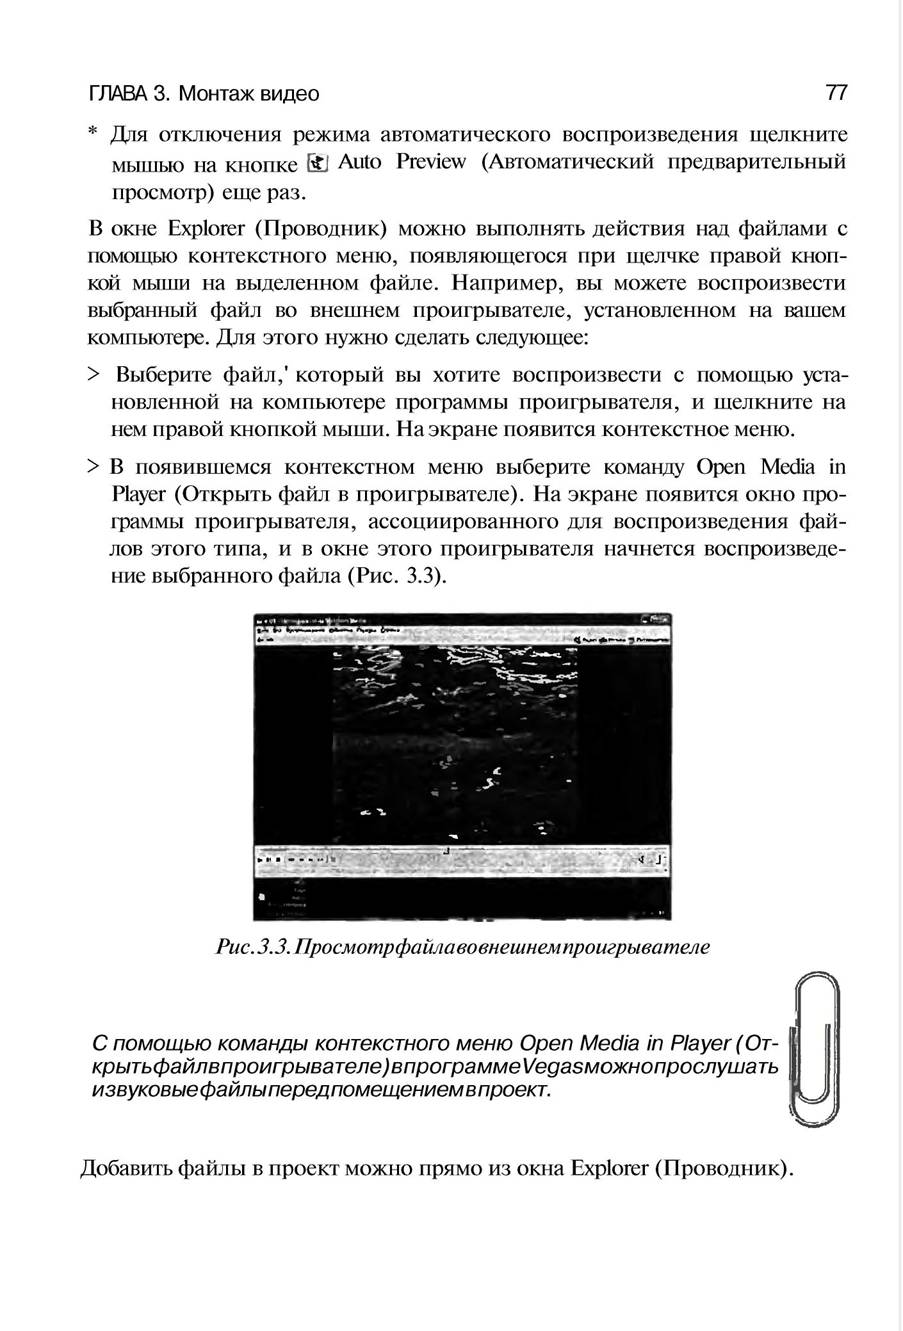 http://redaktori-uroki.3dn.ru/_ph/13/137027655.jpg